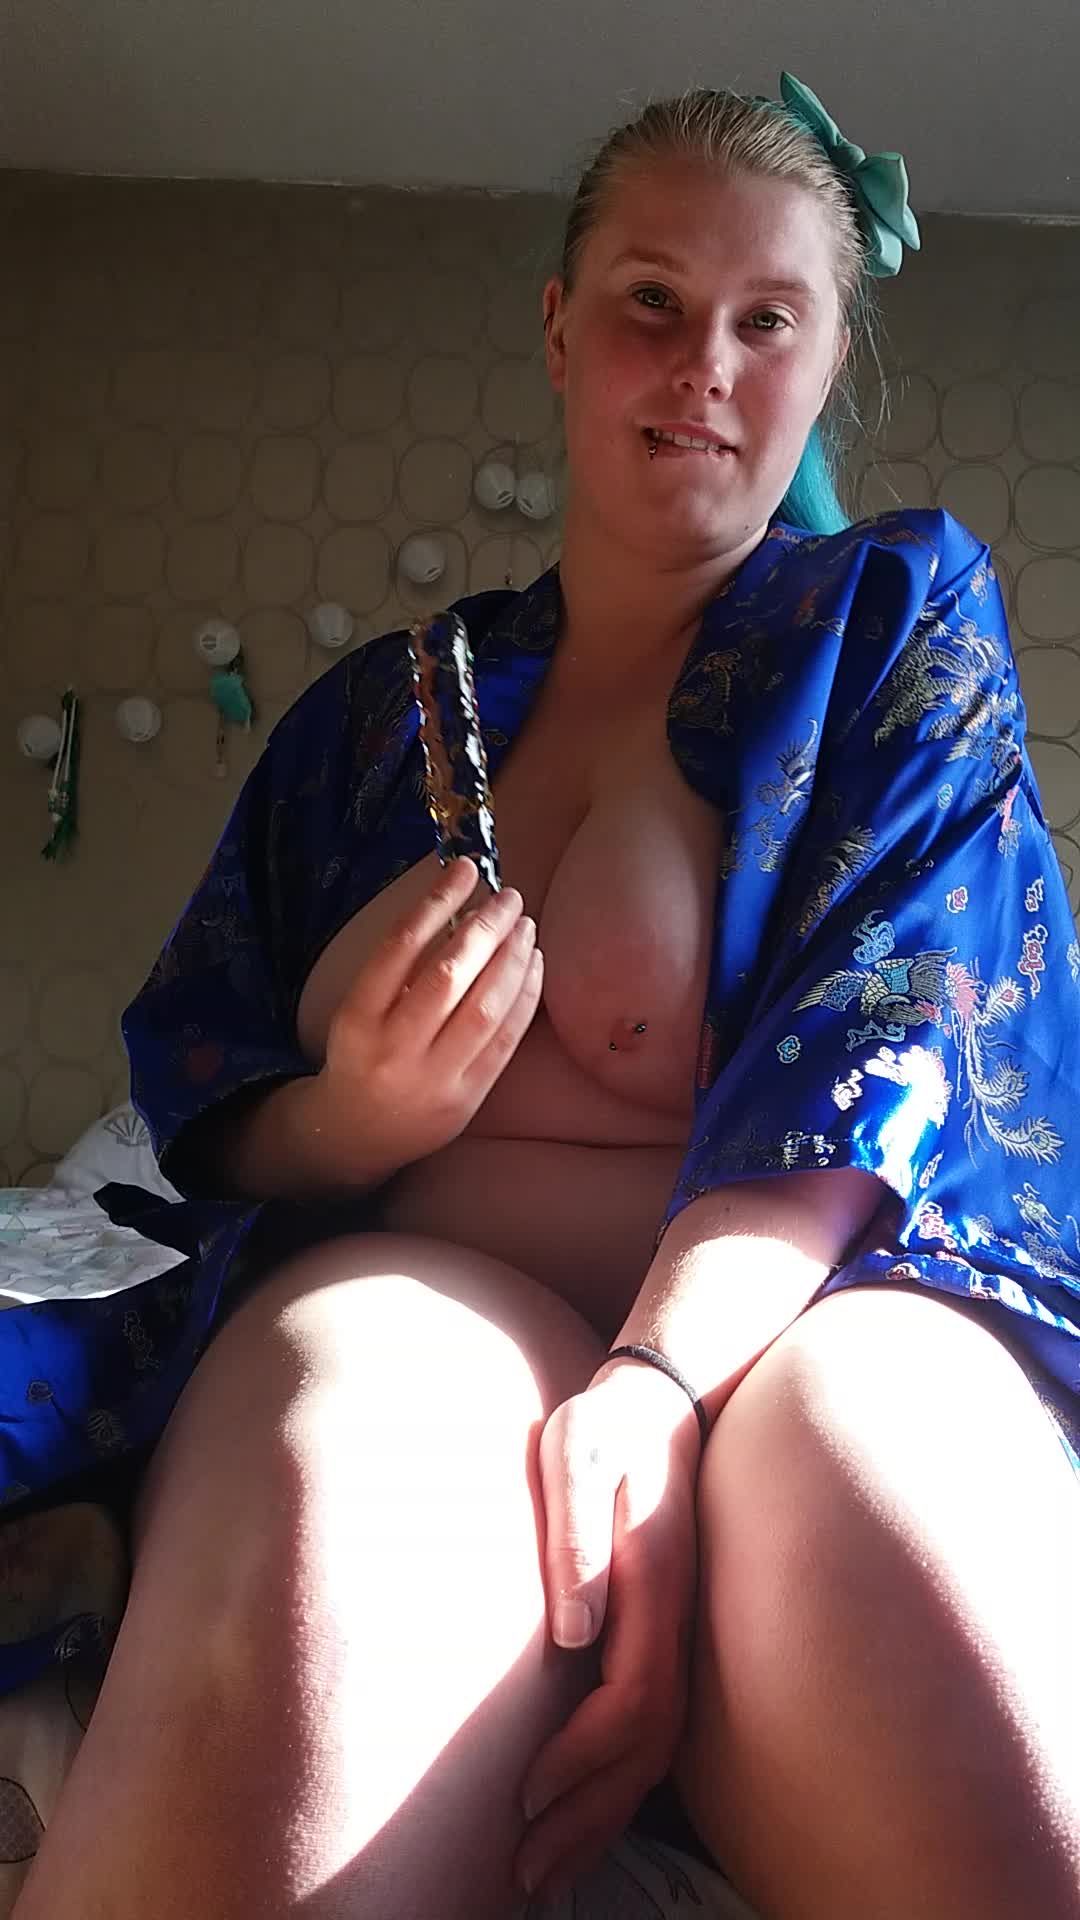 Playing around in my Kimono